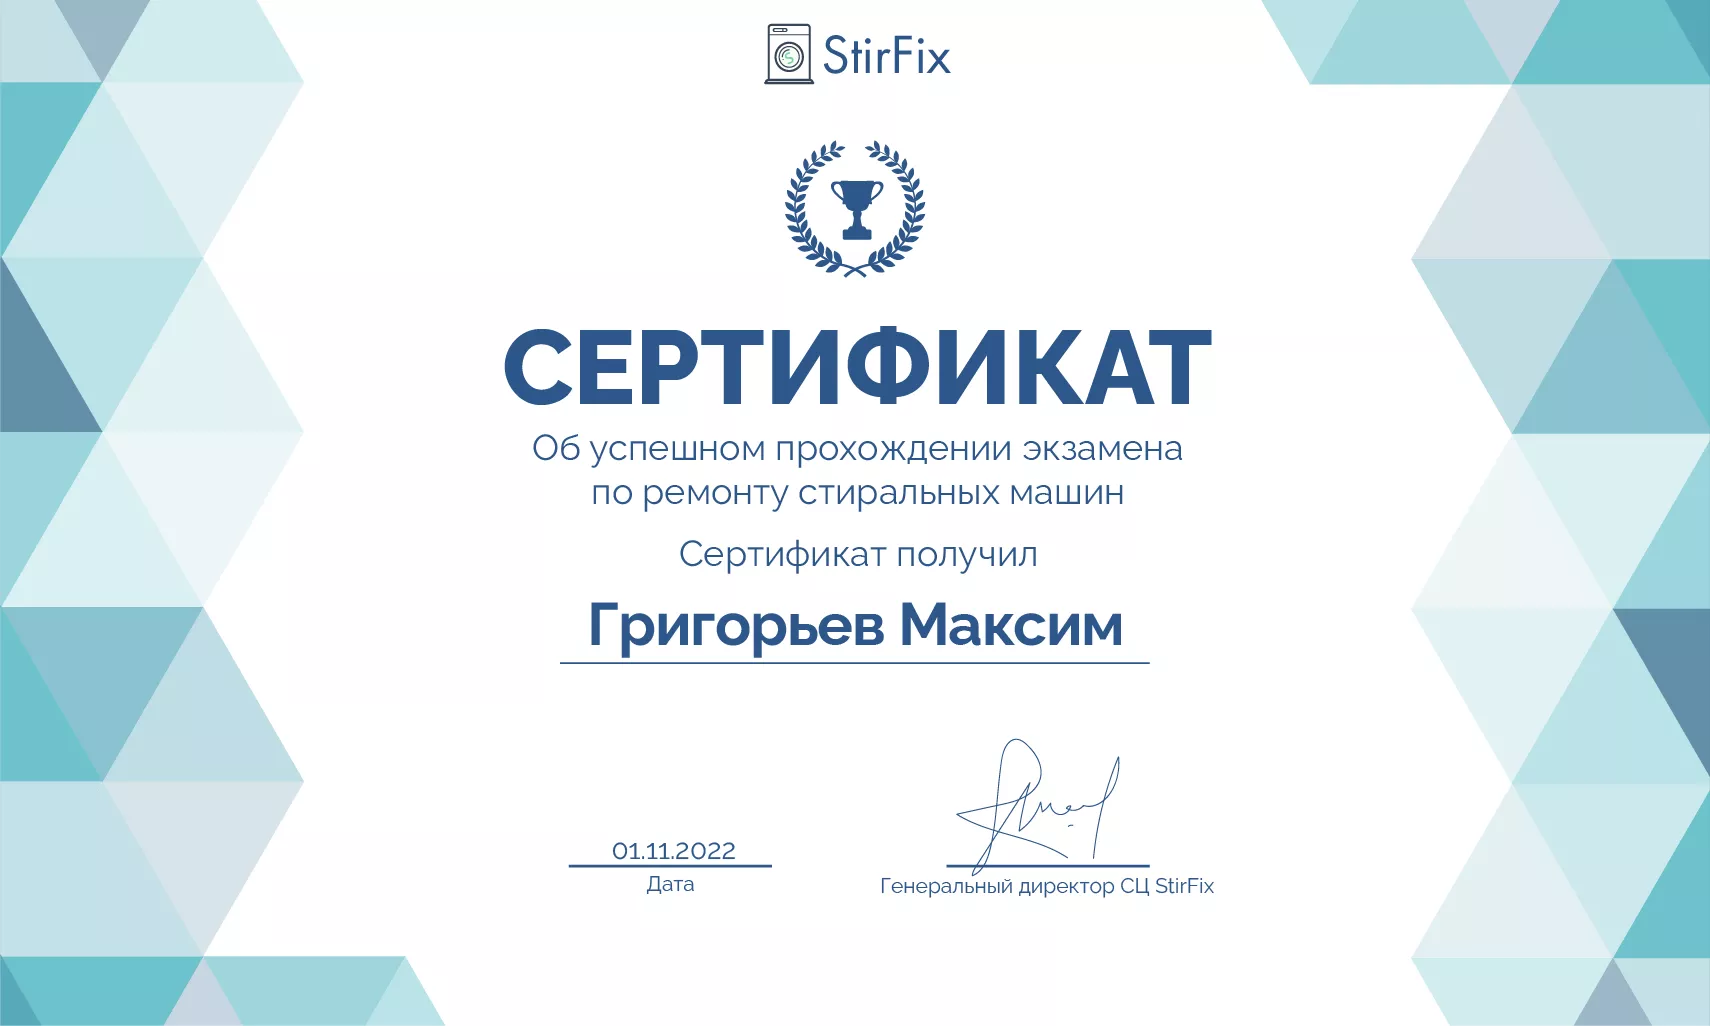 Григорьев Максим сертификат мастера по ремонту стиральных машин